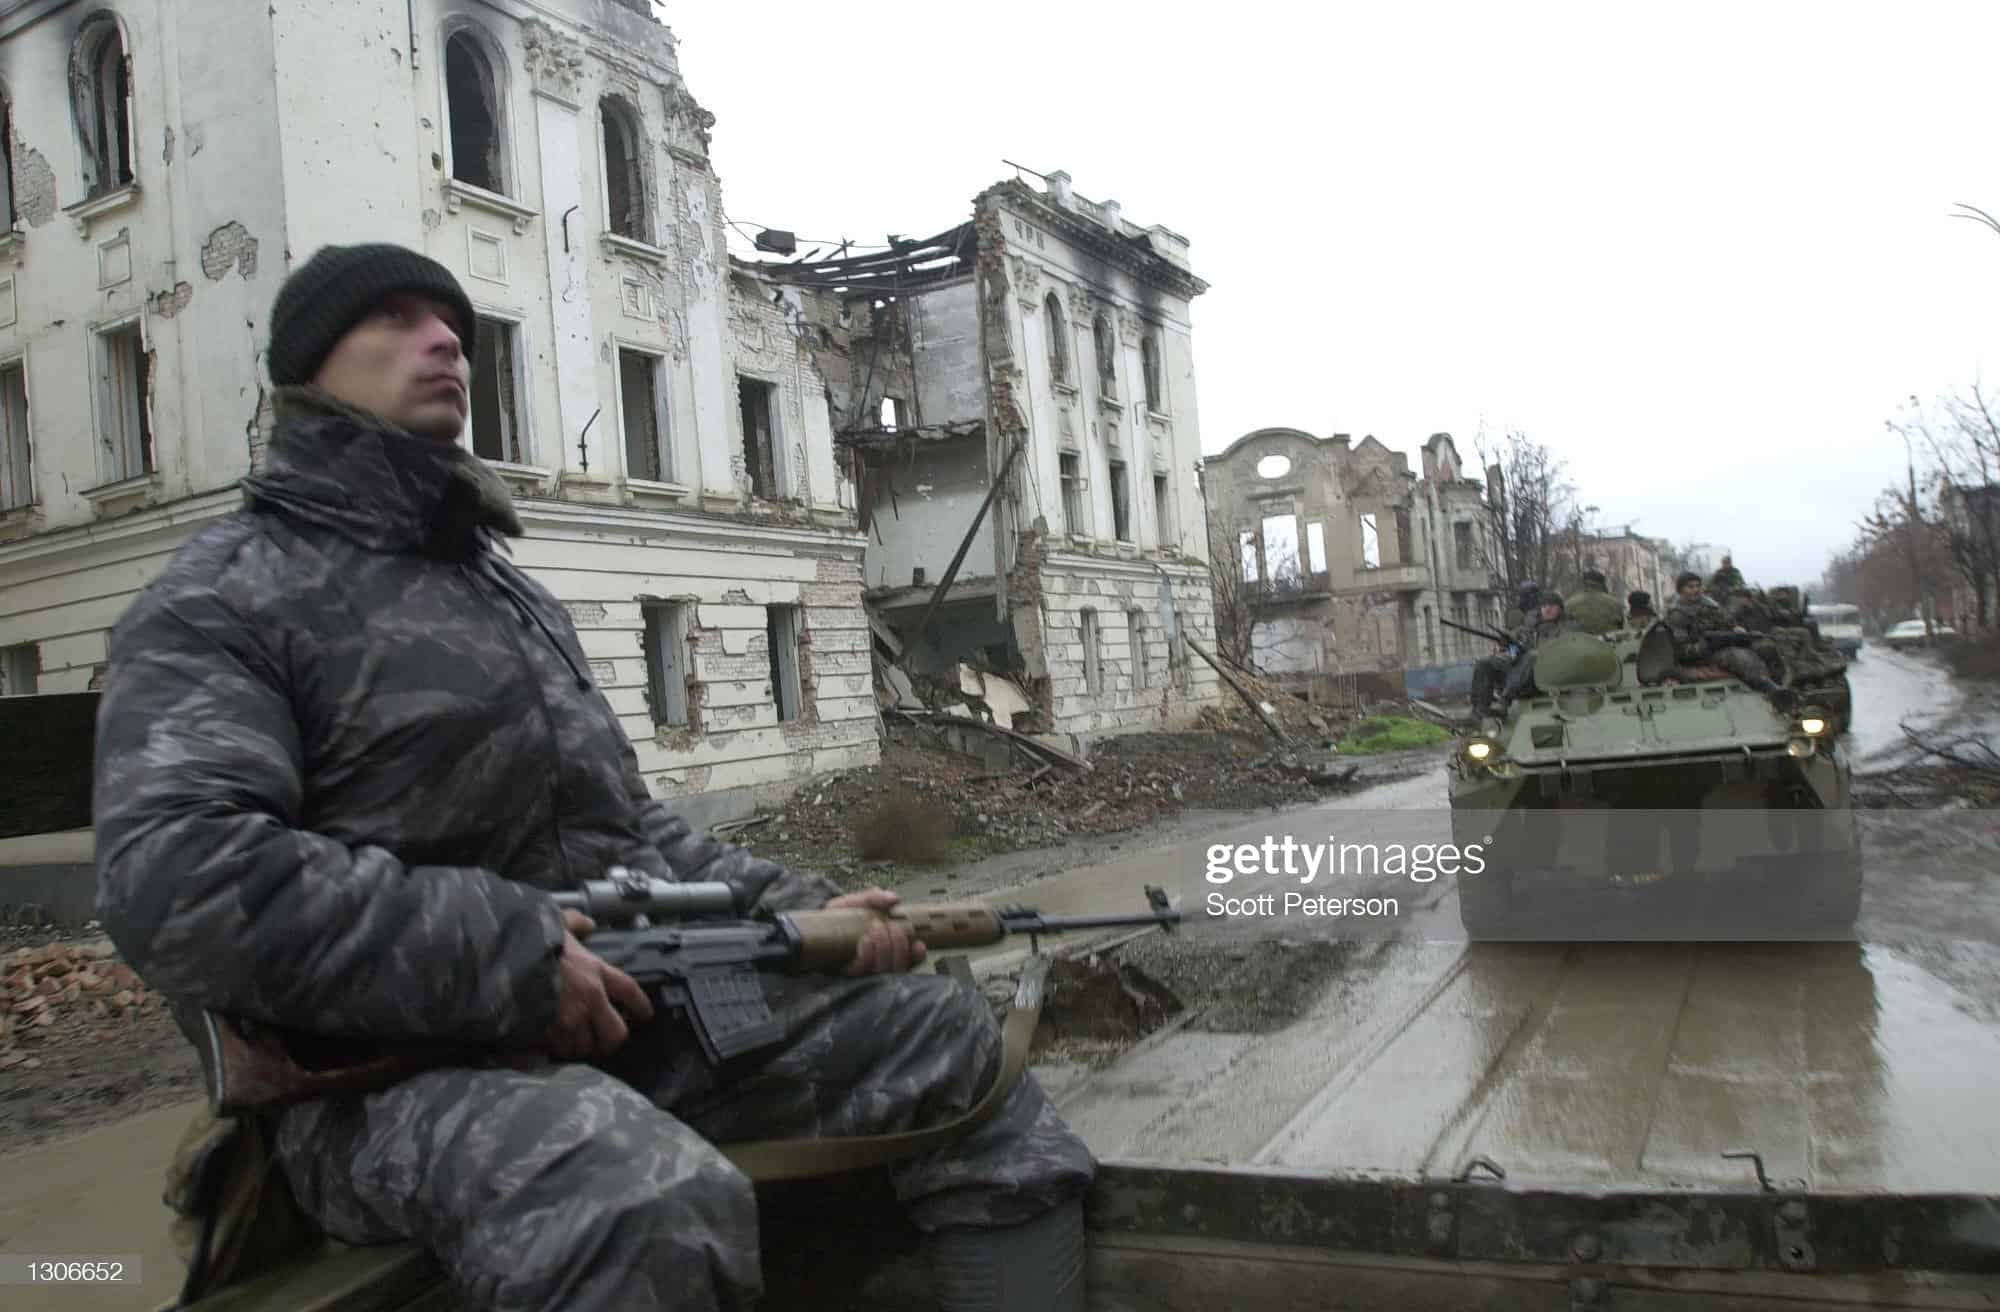 Quân Nga một lần nữa trở lại Chechnya trong một chiến dịch quân sự năm 1999. Ảnh: Getty Images